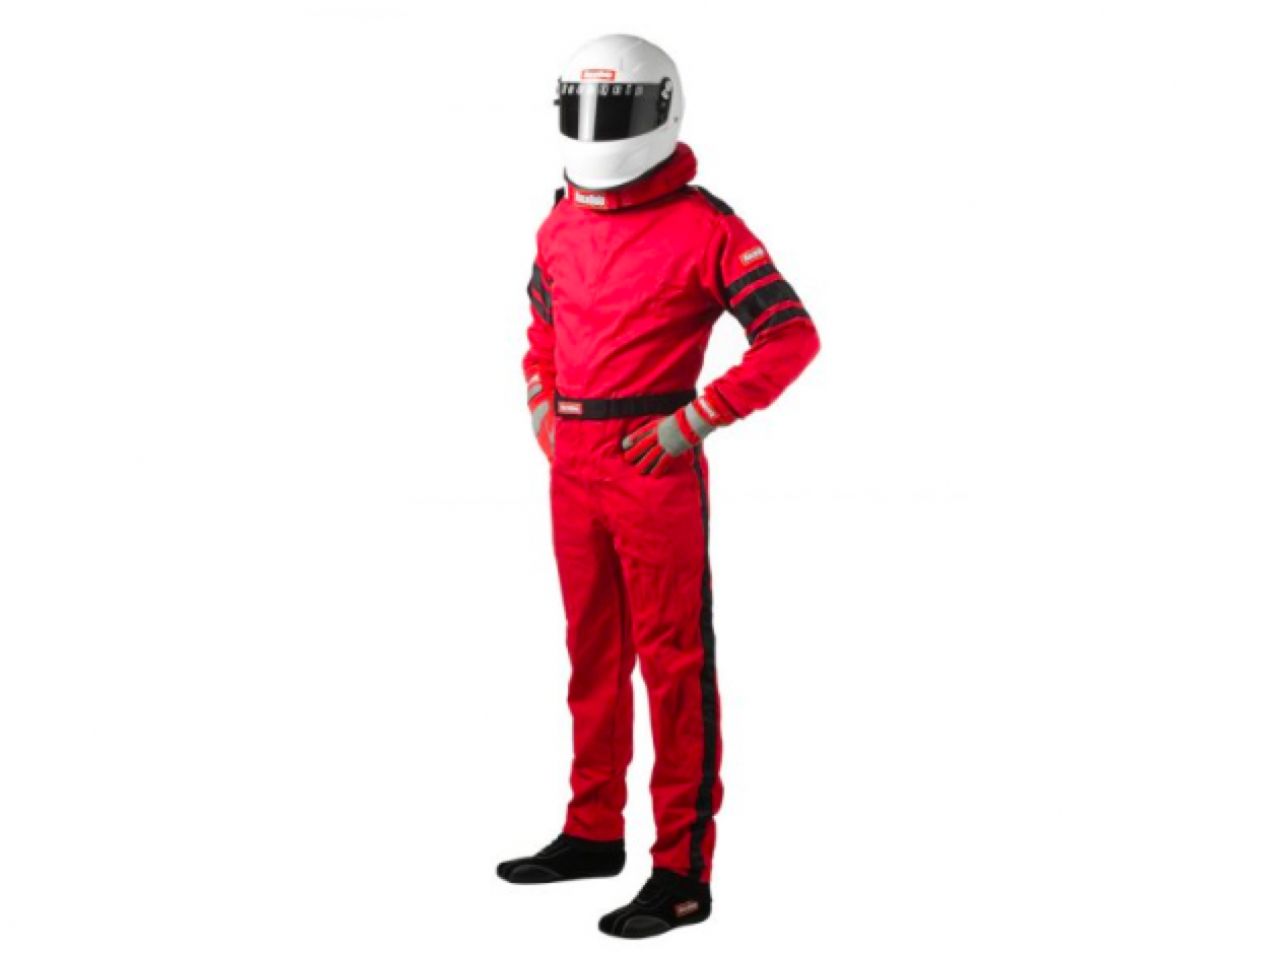 Racequip Suits 110017 Item Image